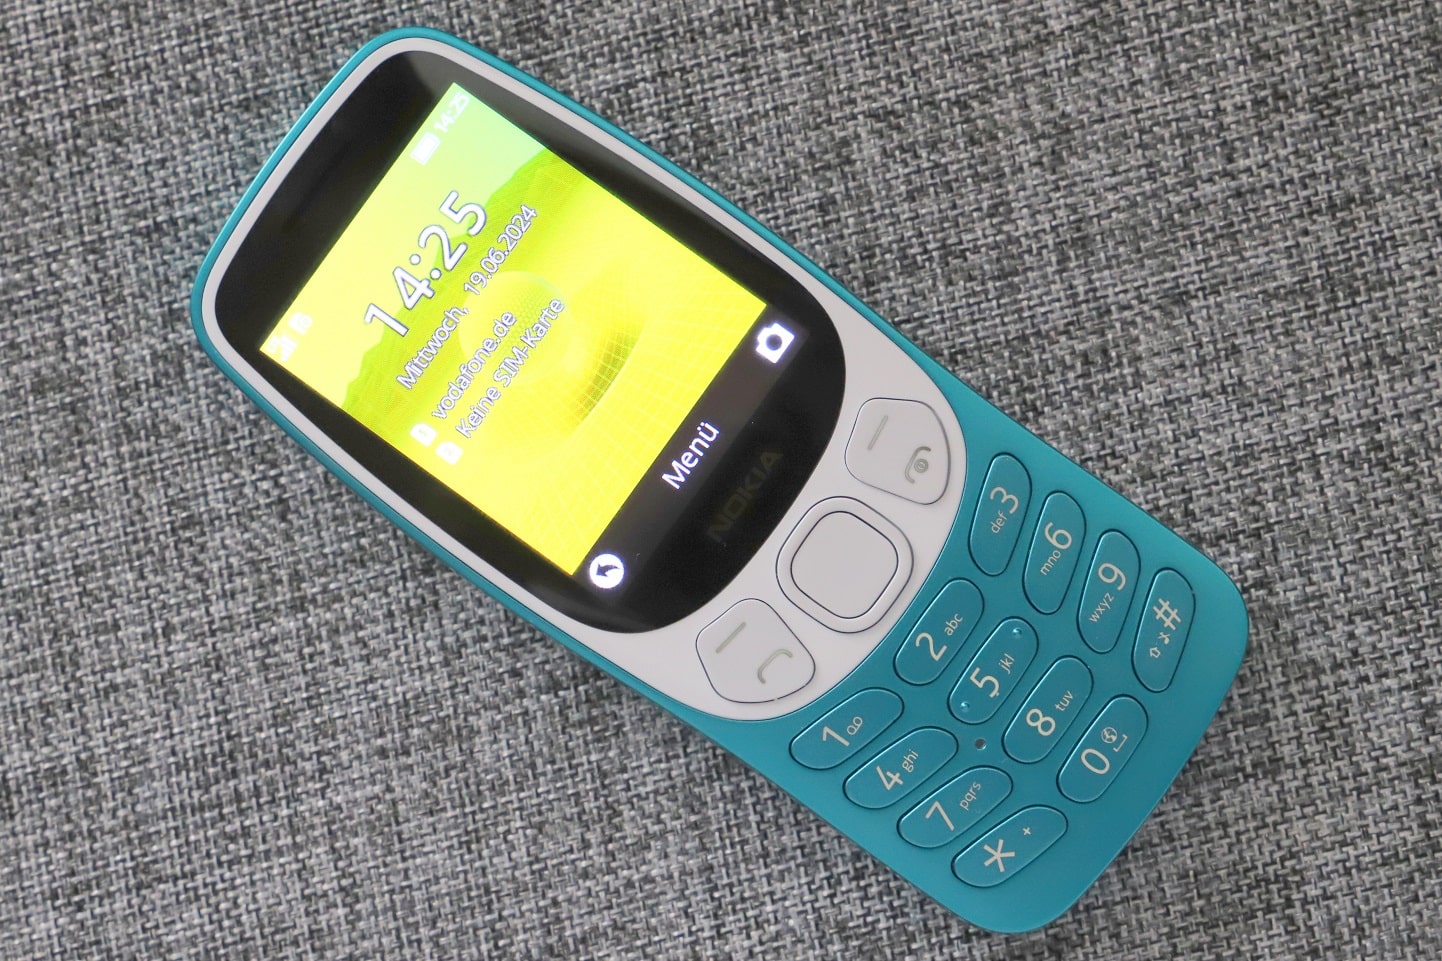 Display des Nokia 3210